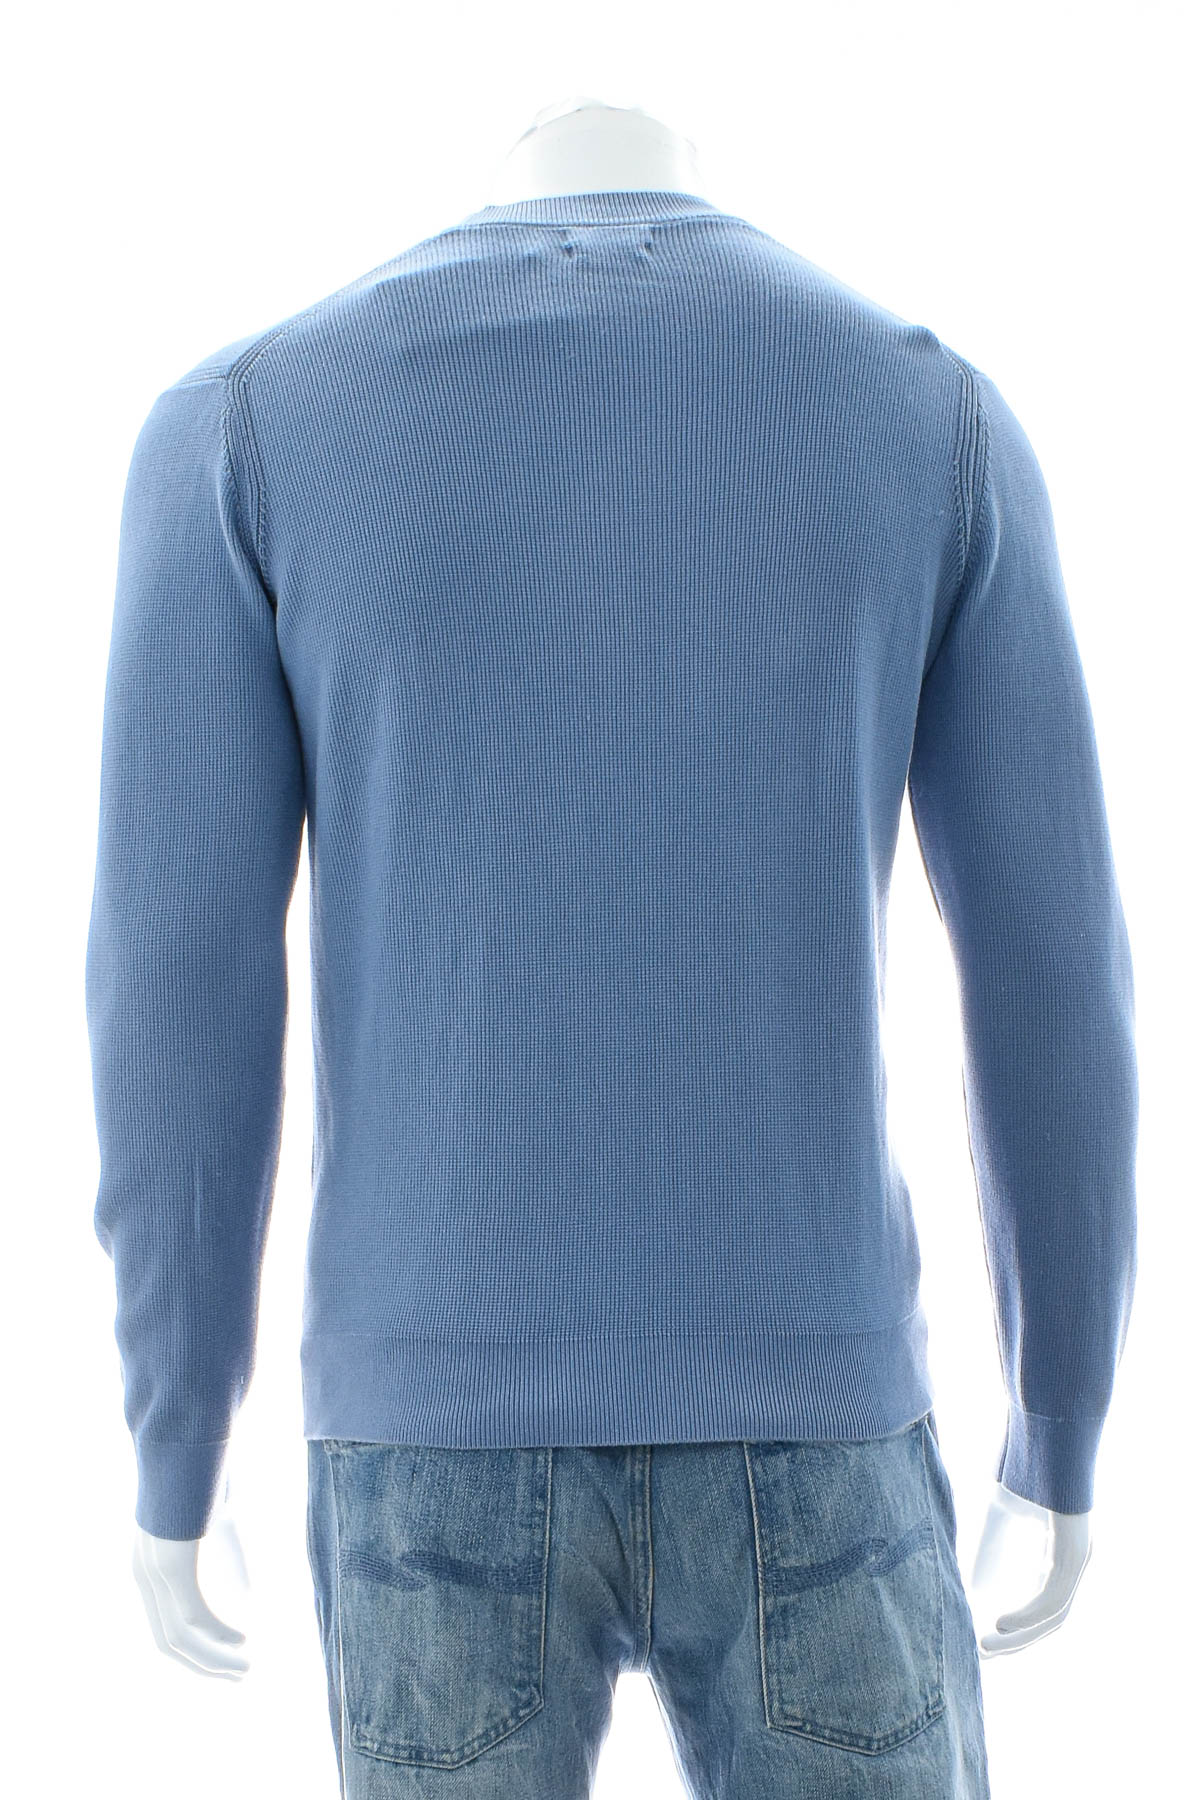 Men's sweater - Massimo Dutti - 1